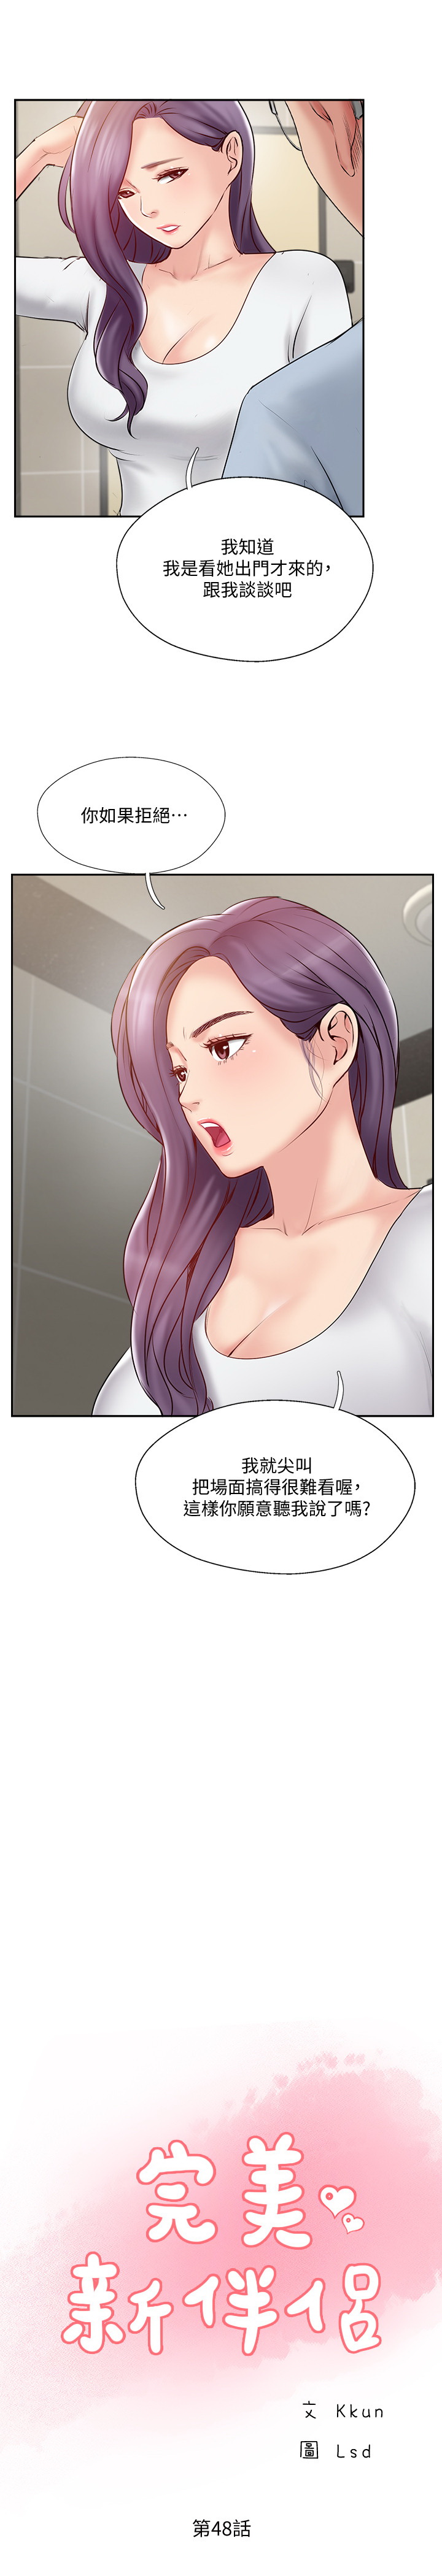 韩国污漫画 完美新伴侶 第48话 3